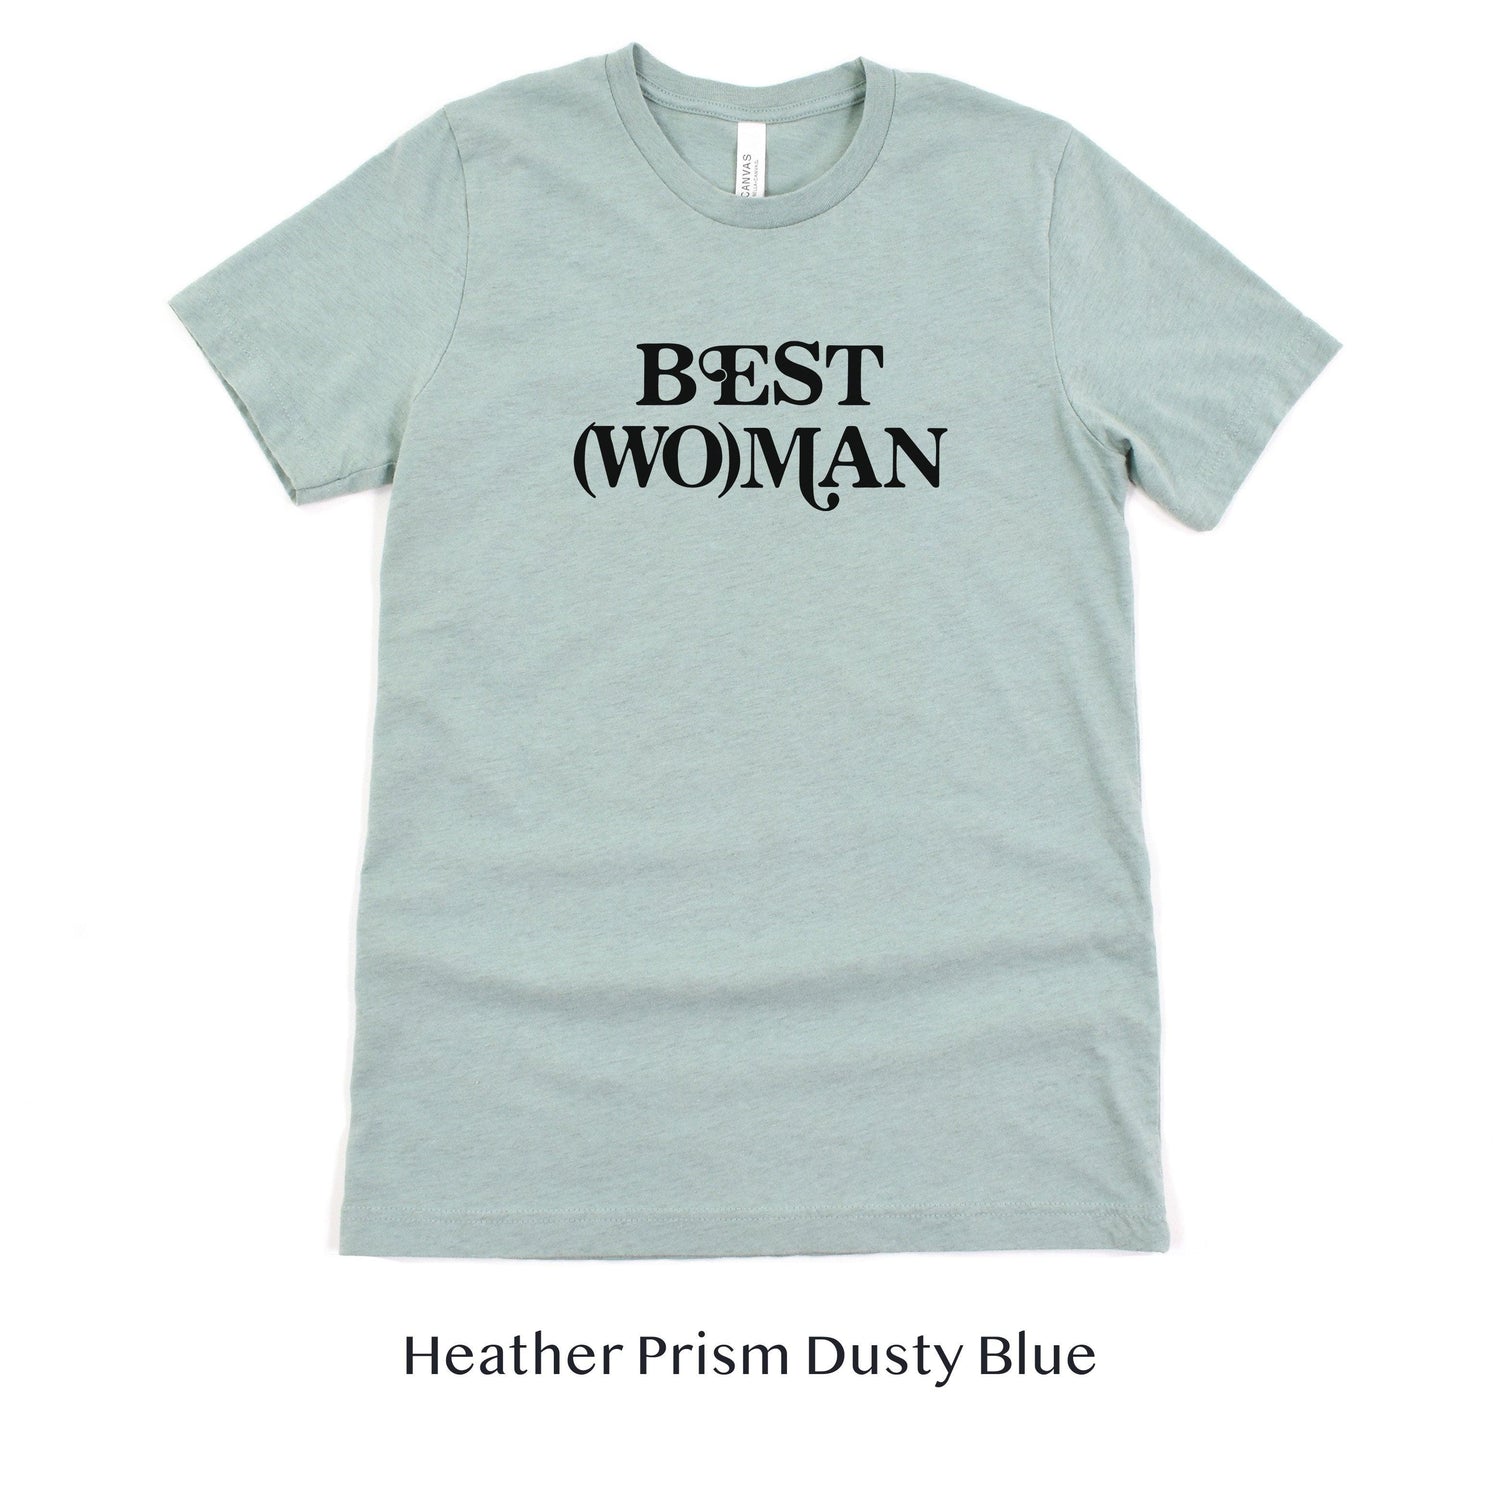 Best (Wo)man Retro Short-sleeve Tee for Best Woman by Oaklynn Lane - dusty seafoam blue shirt